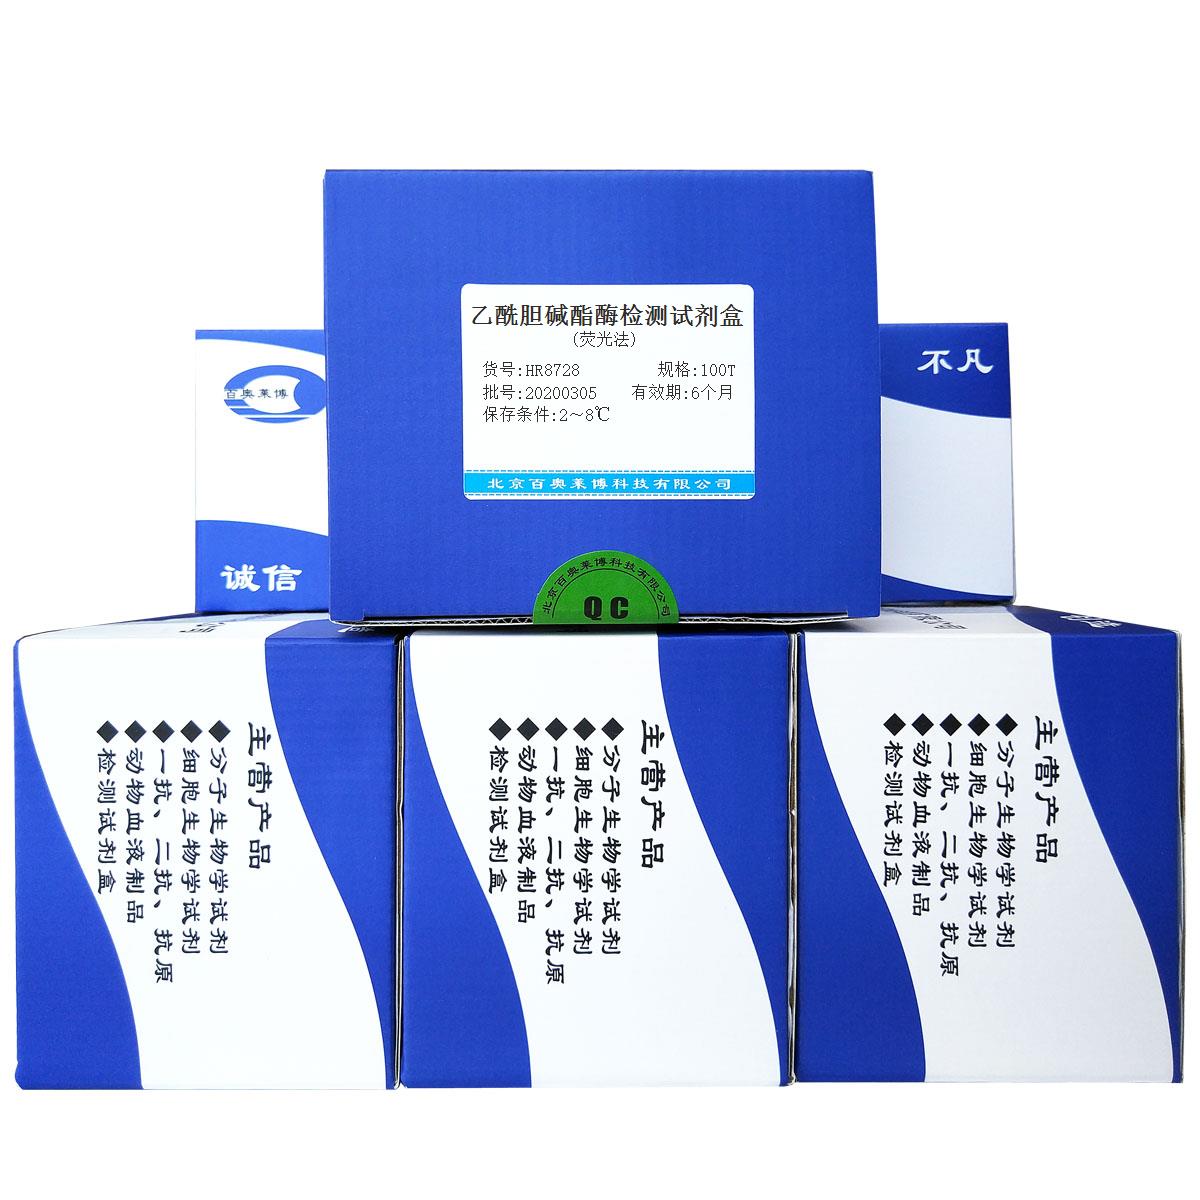 乙酰胆碱酯酶检测试剂盒(荧光法)北京现货